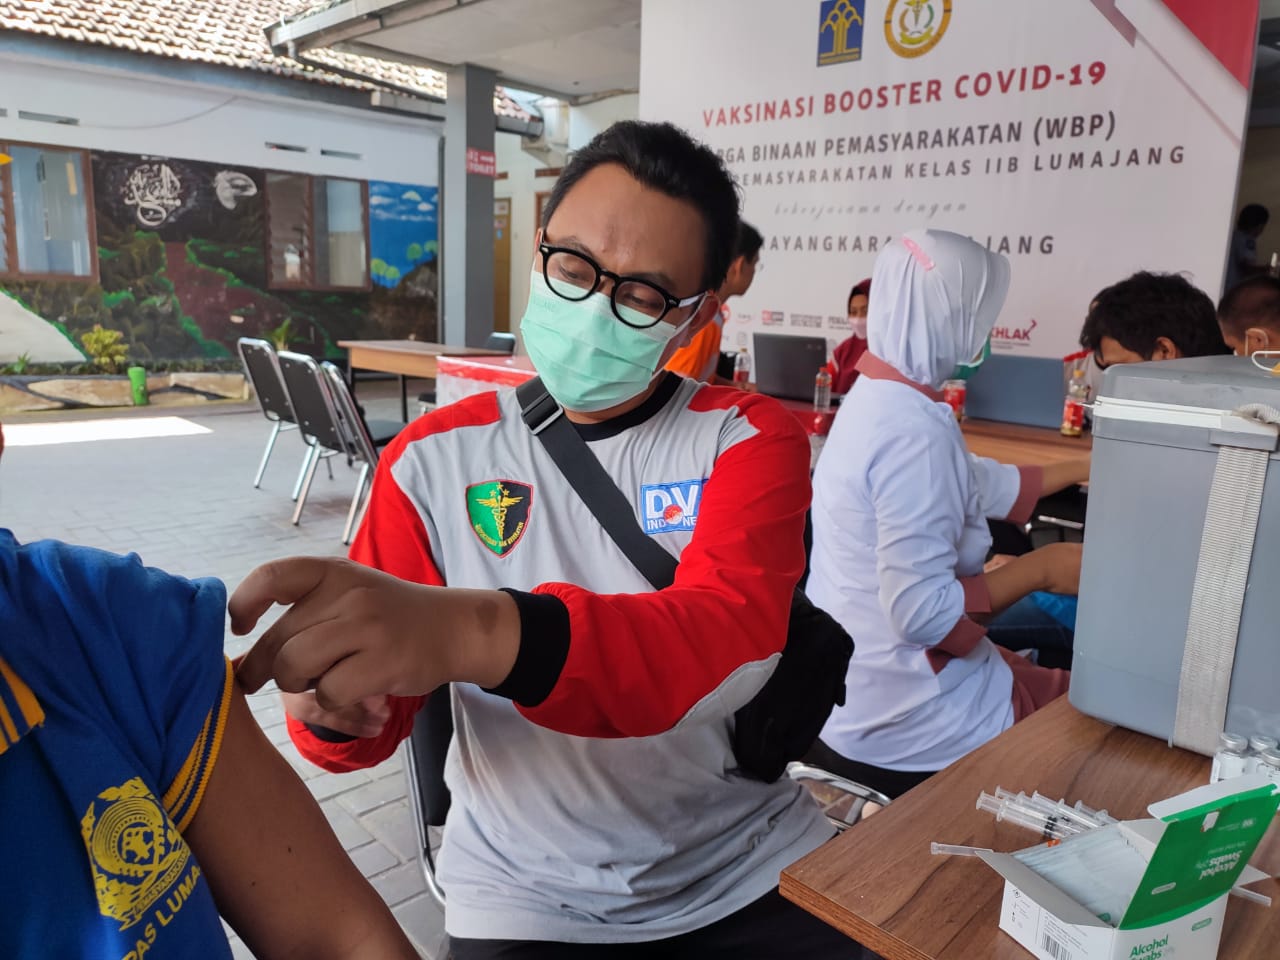 325 Penghuni Lapas Klas ll B Lumajang Jawa Timur Disuntik Vaksin Booster